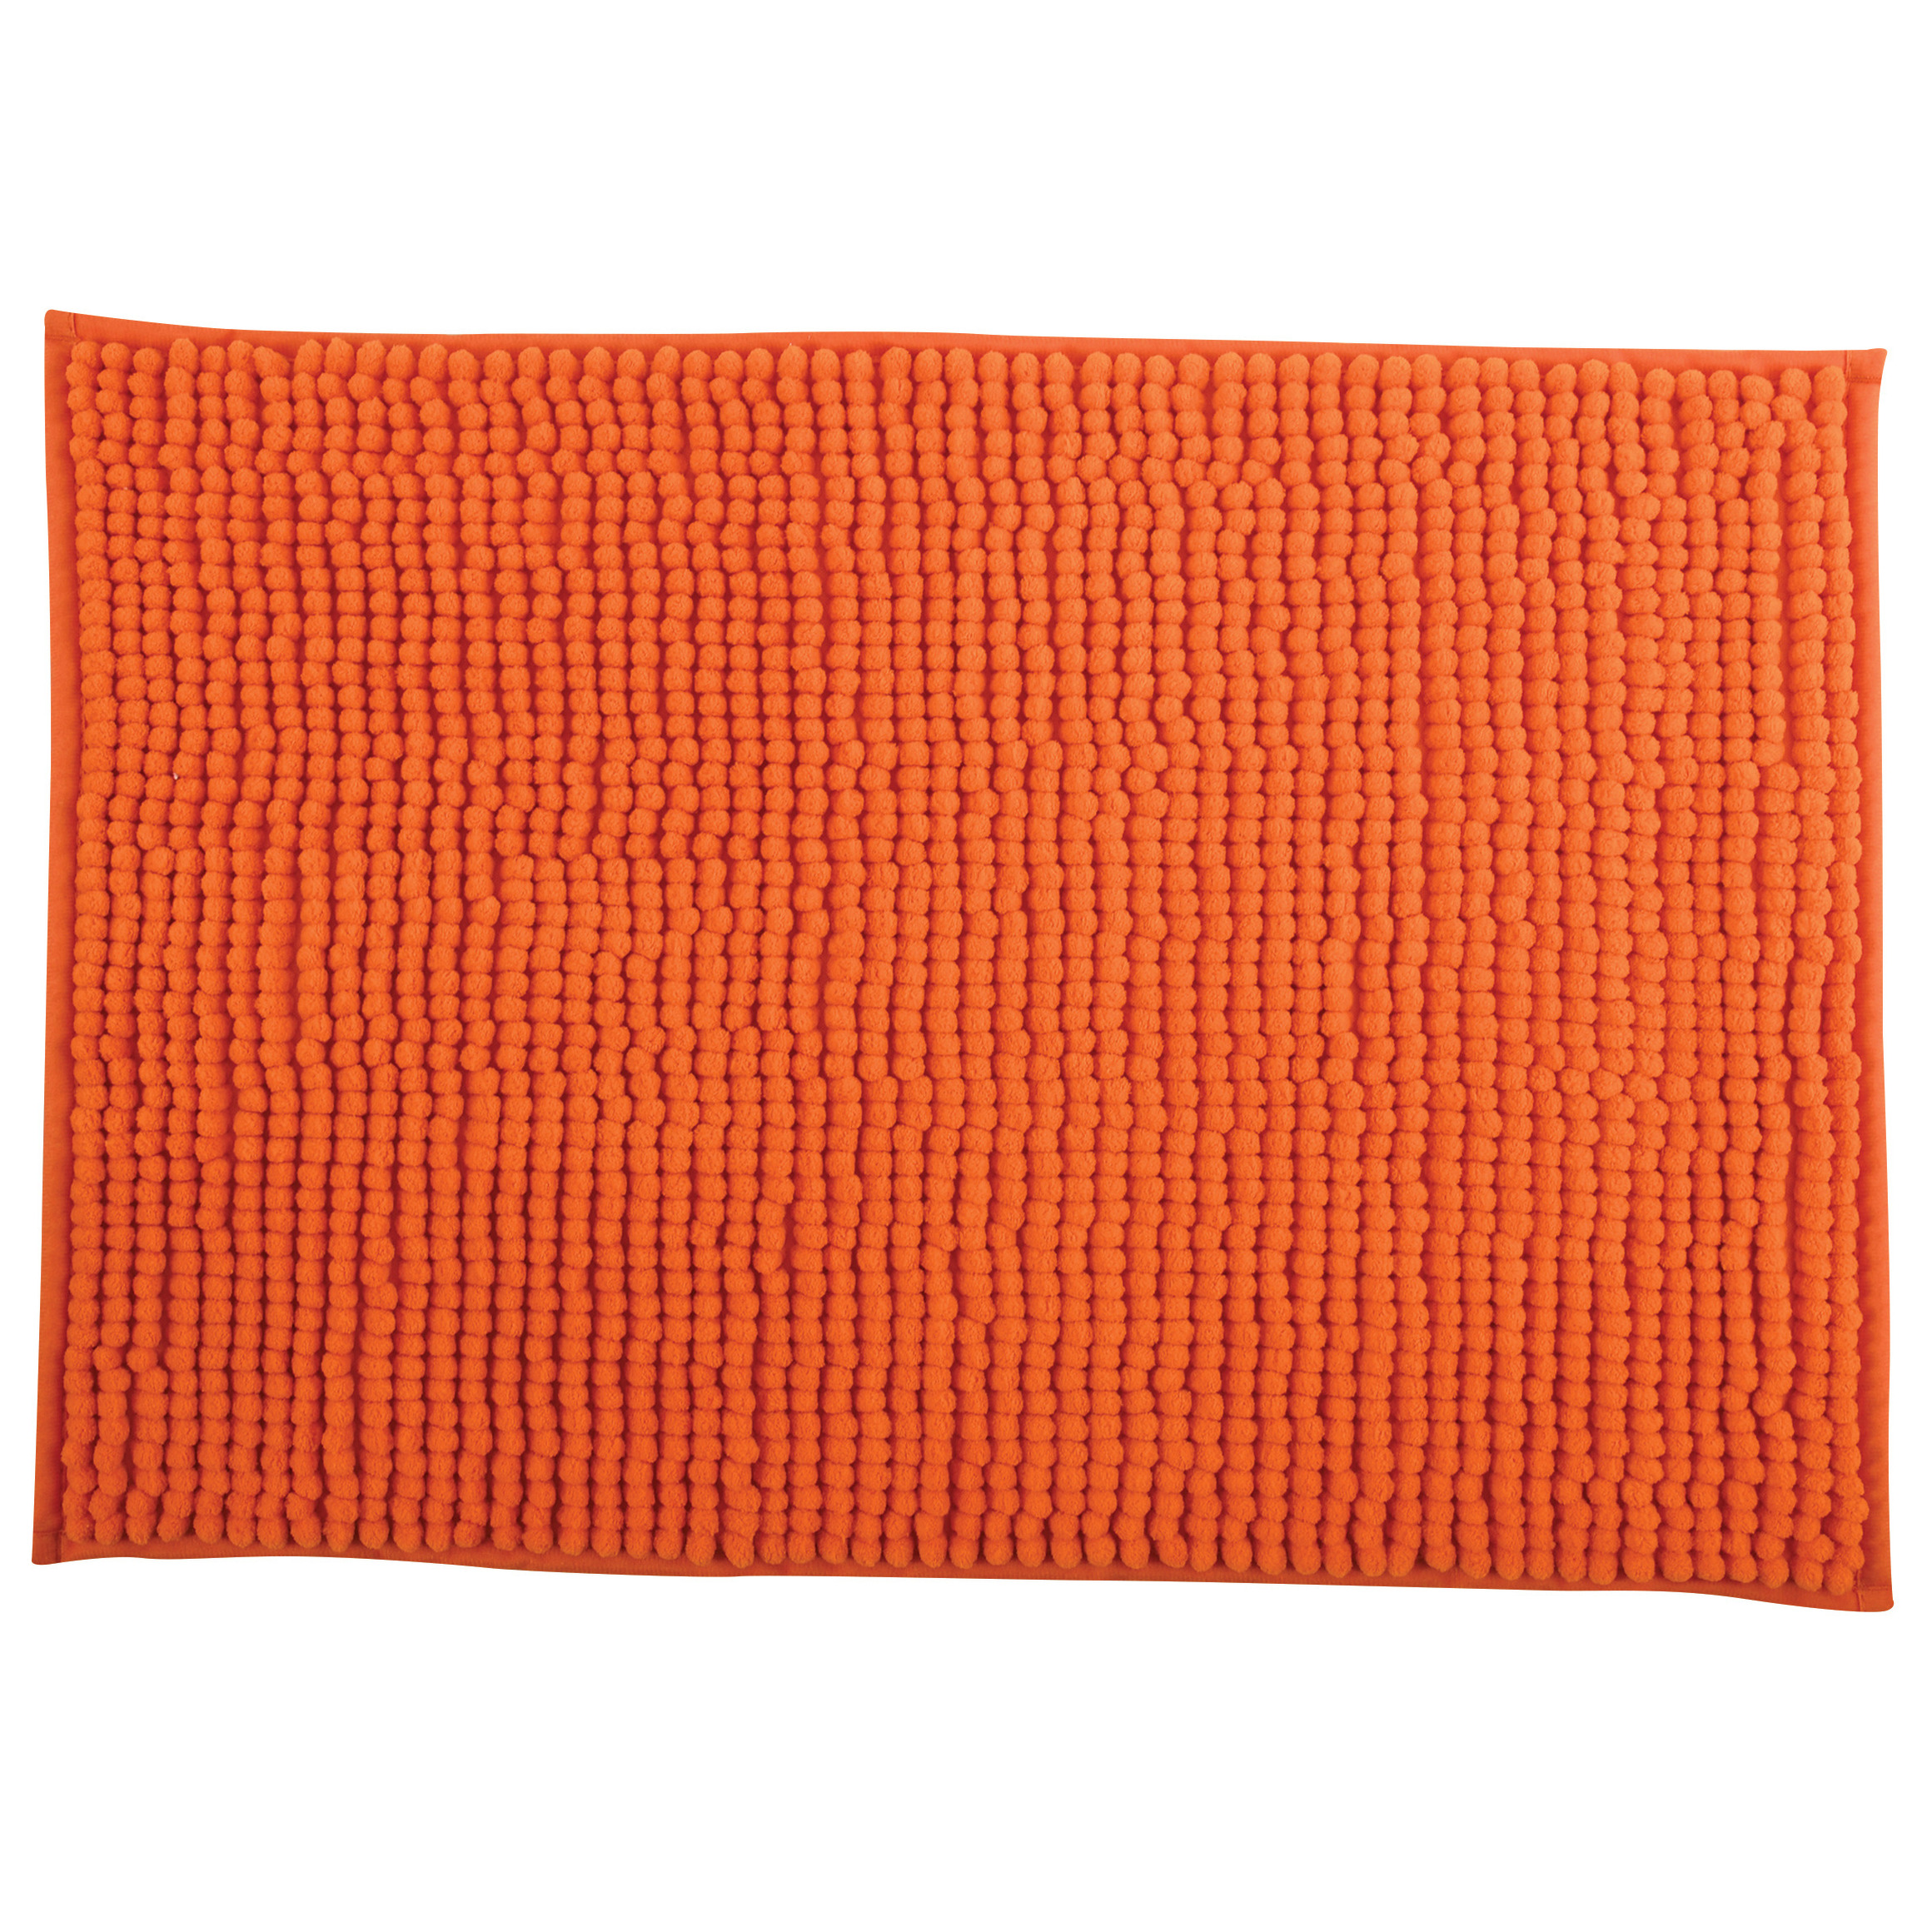 Badkamerkleedje-badmat tapijt voor op de vloer oranje 40 x 60 cm